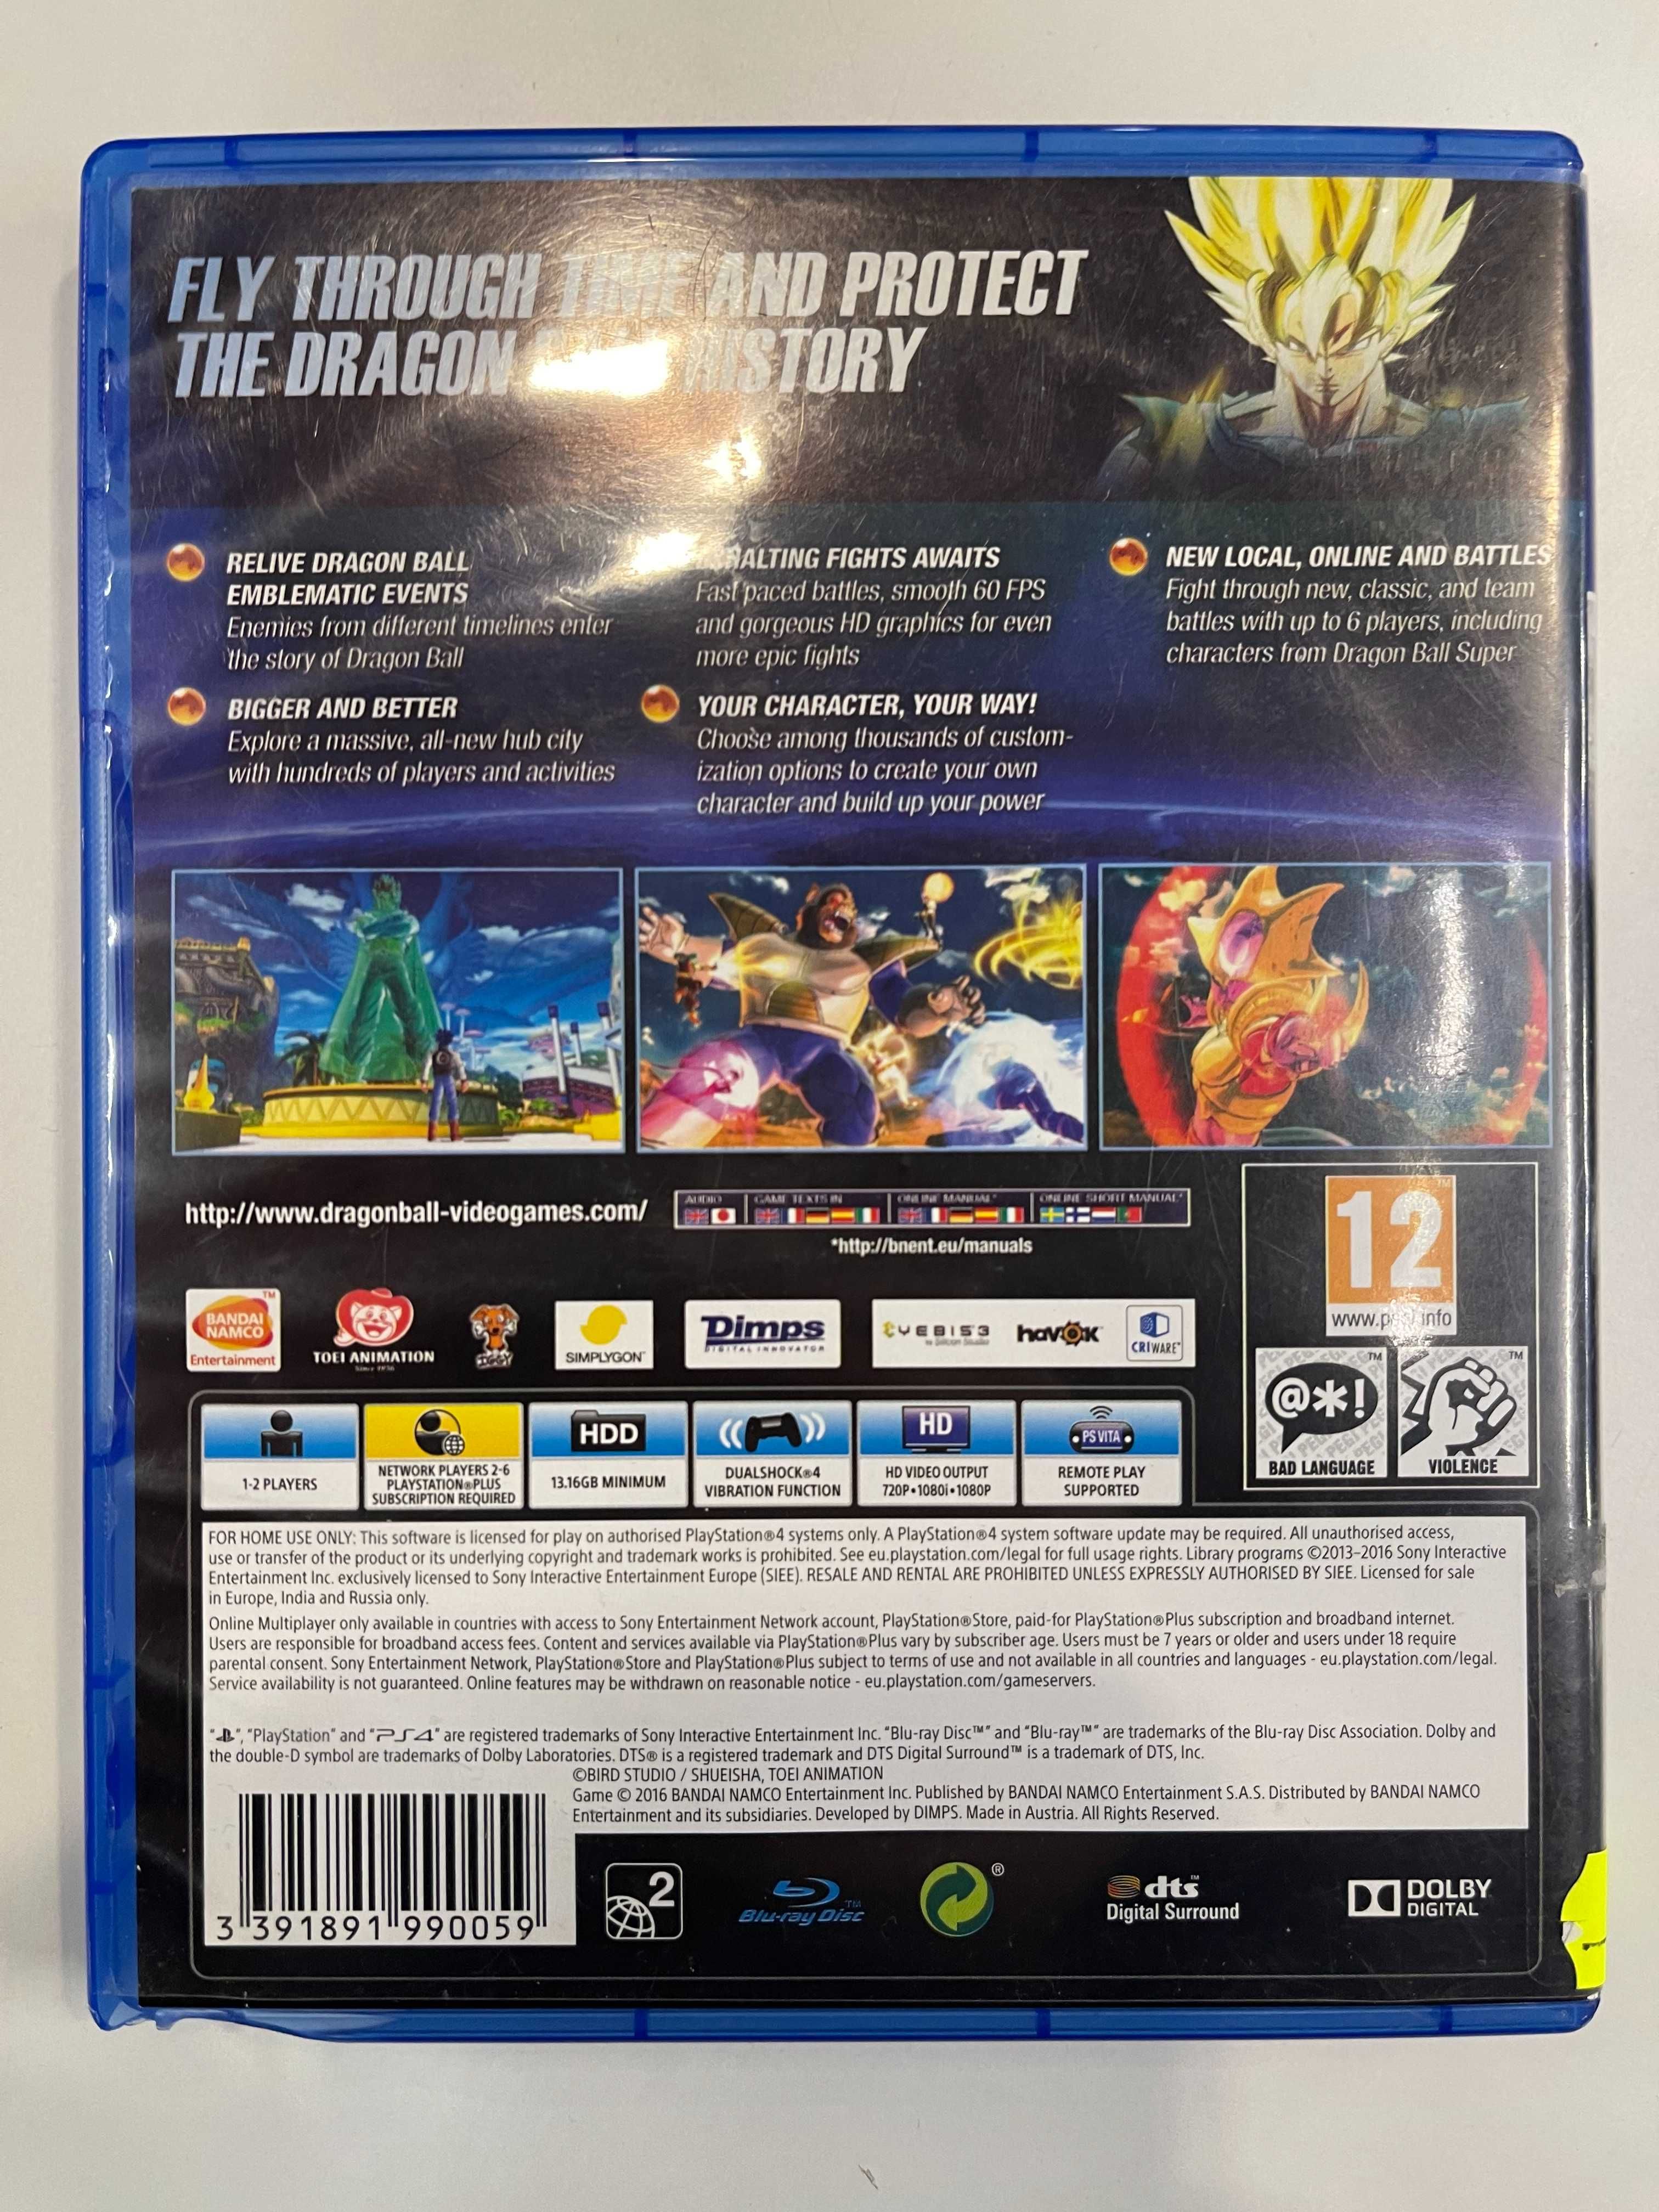 Dragon Ball Xenoverse 2 PS4